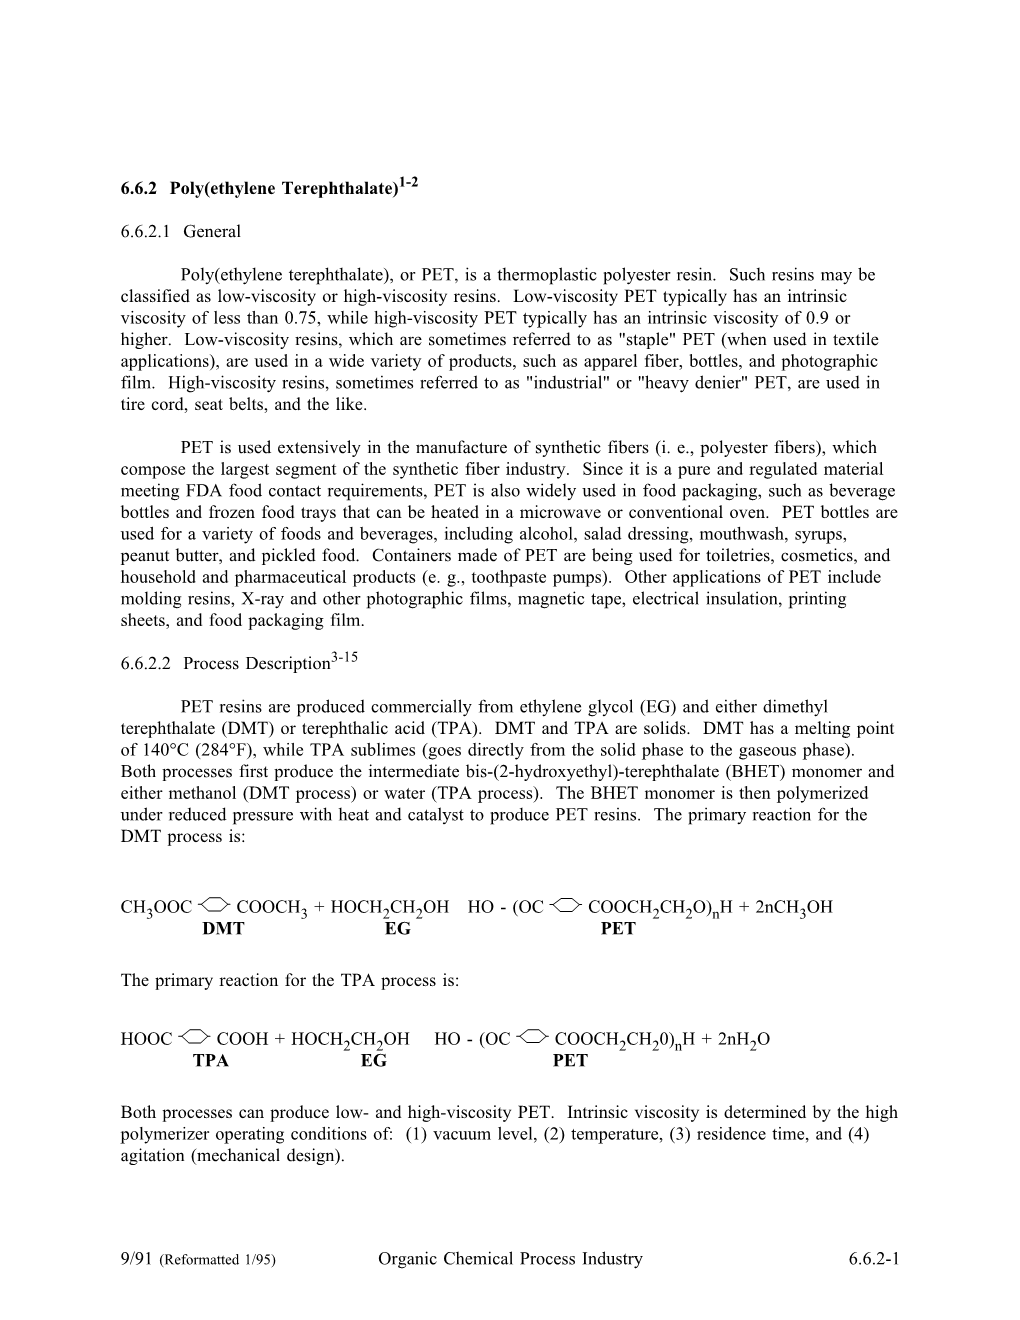 AP-42, CH 6.6.2: Poly(Ethylene Terephthalate)